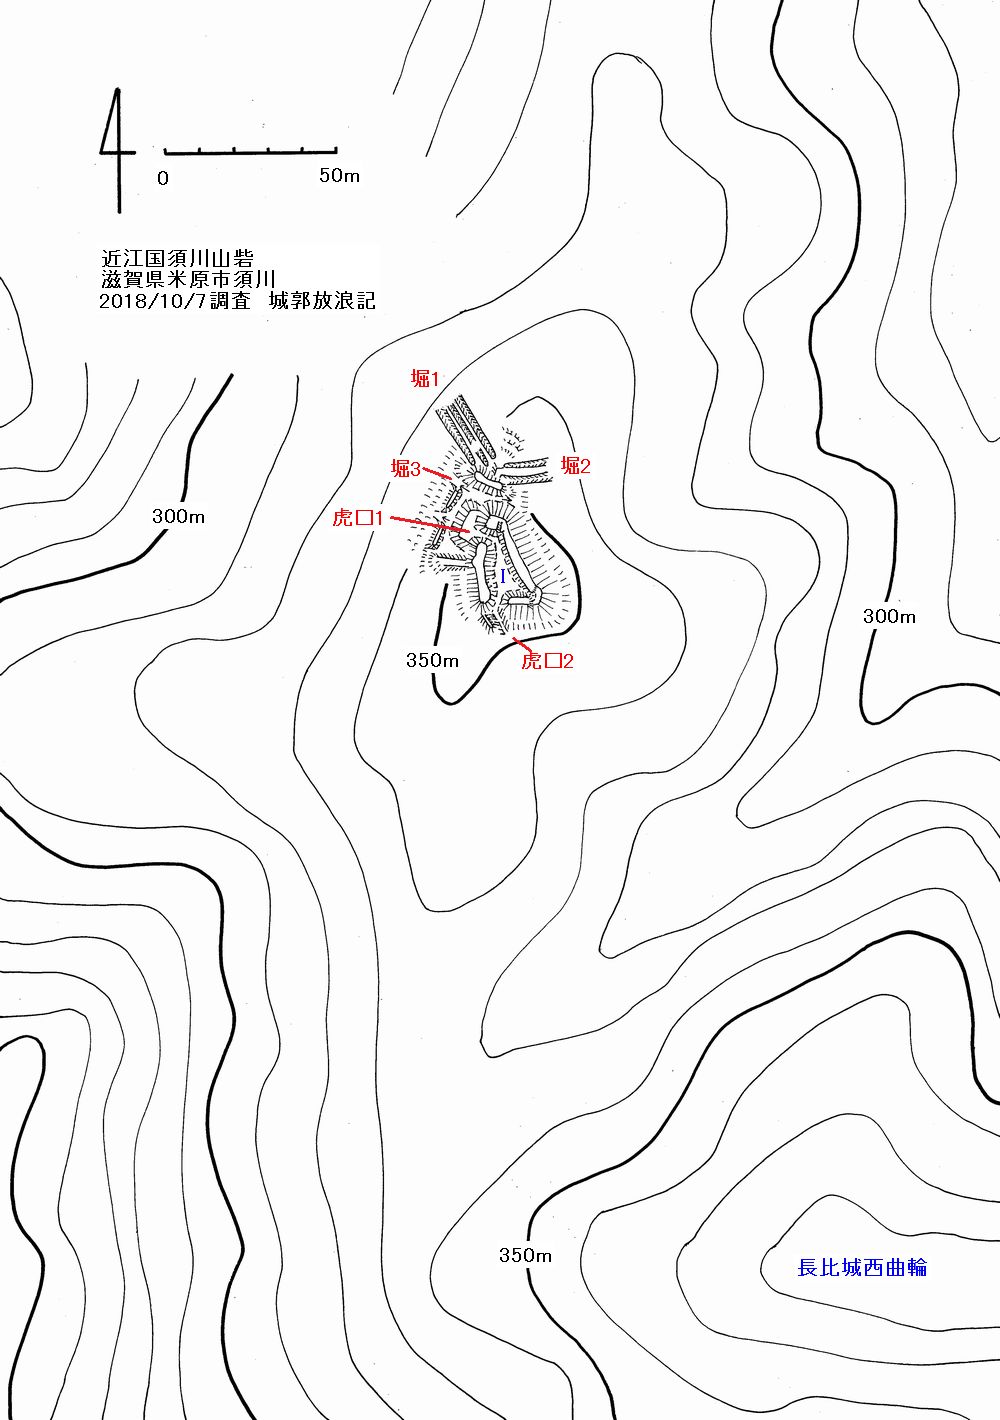 須川山砦縄張図